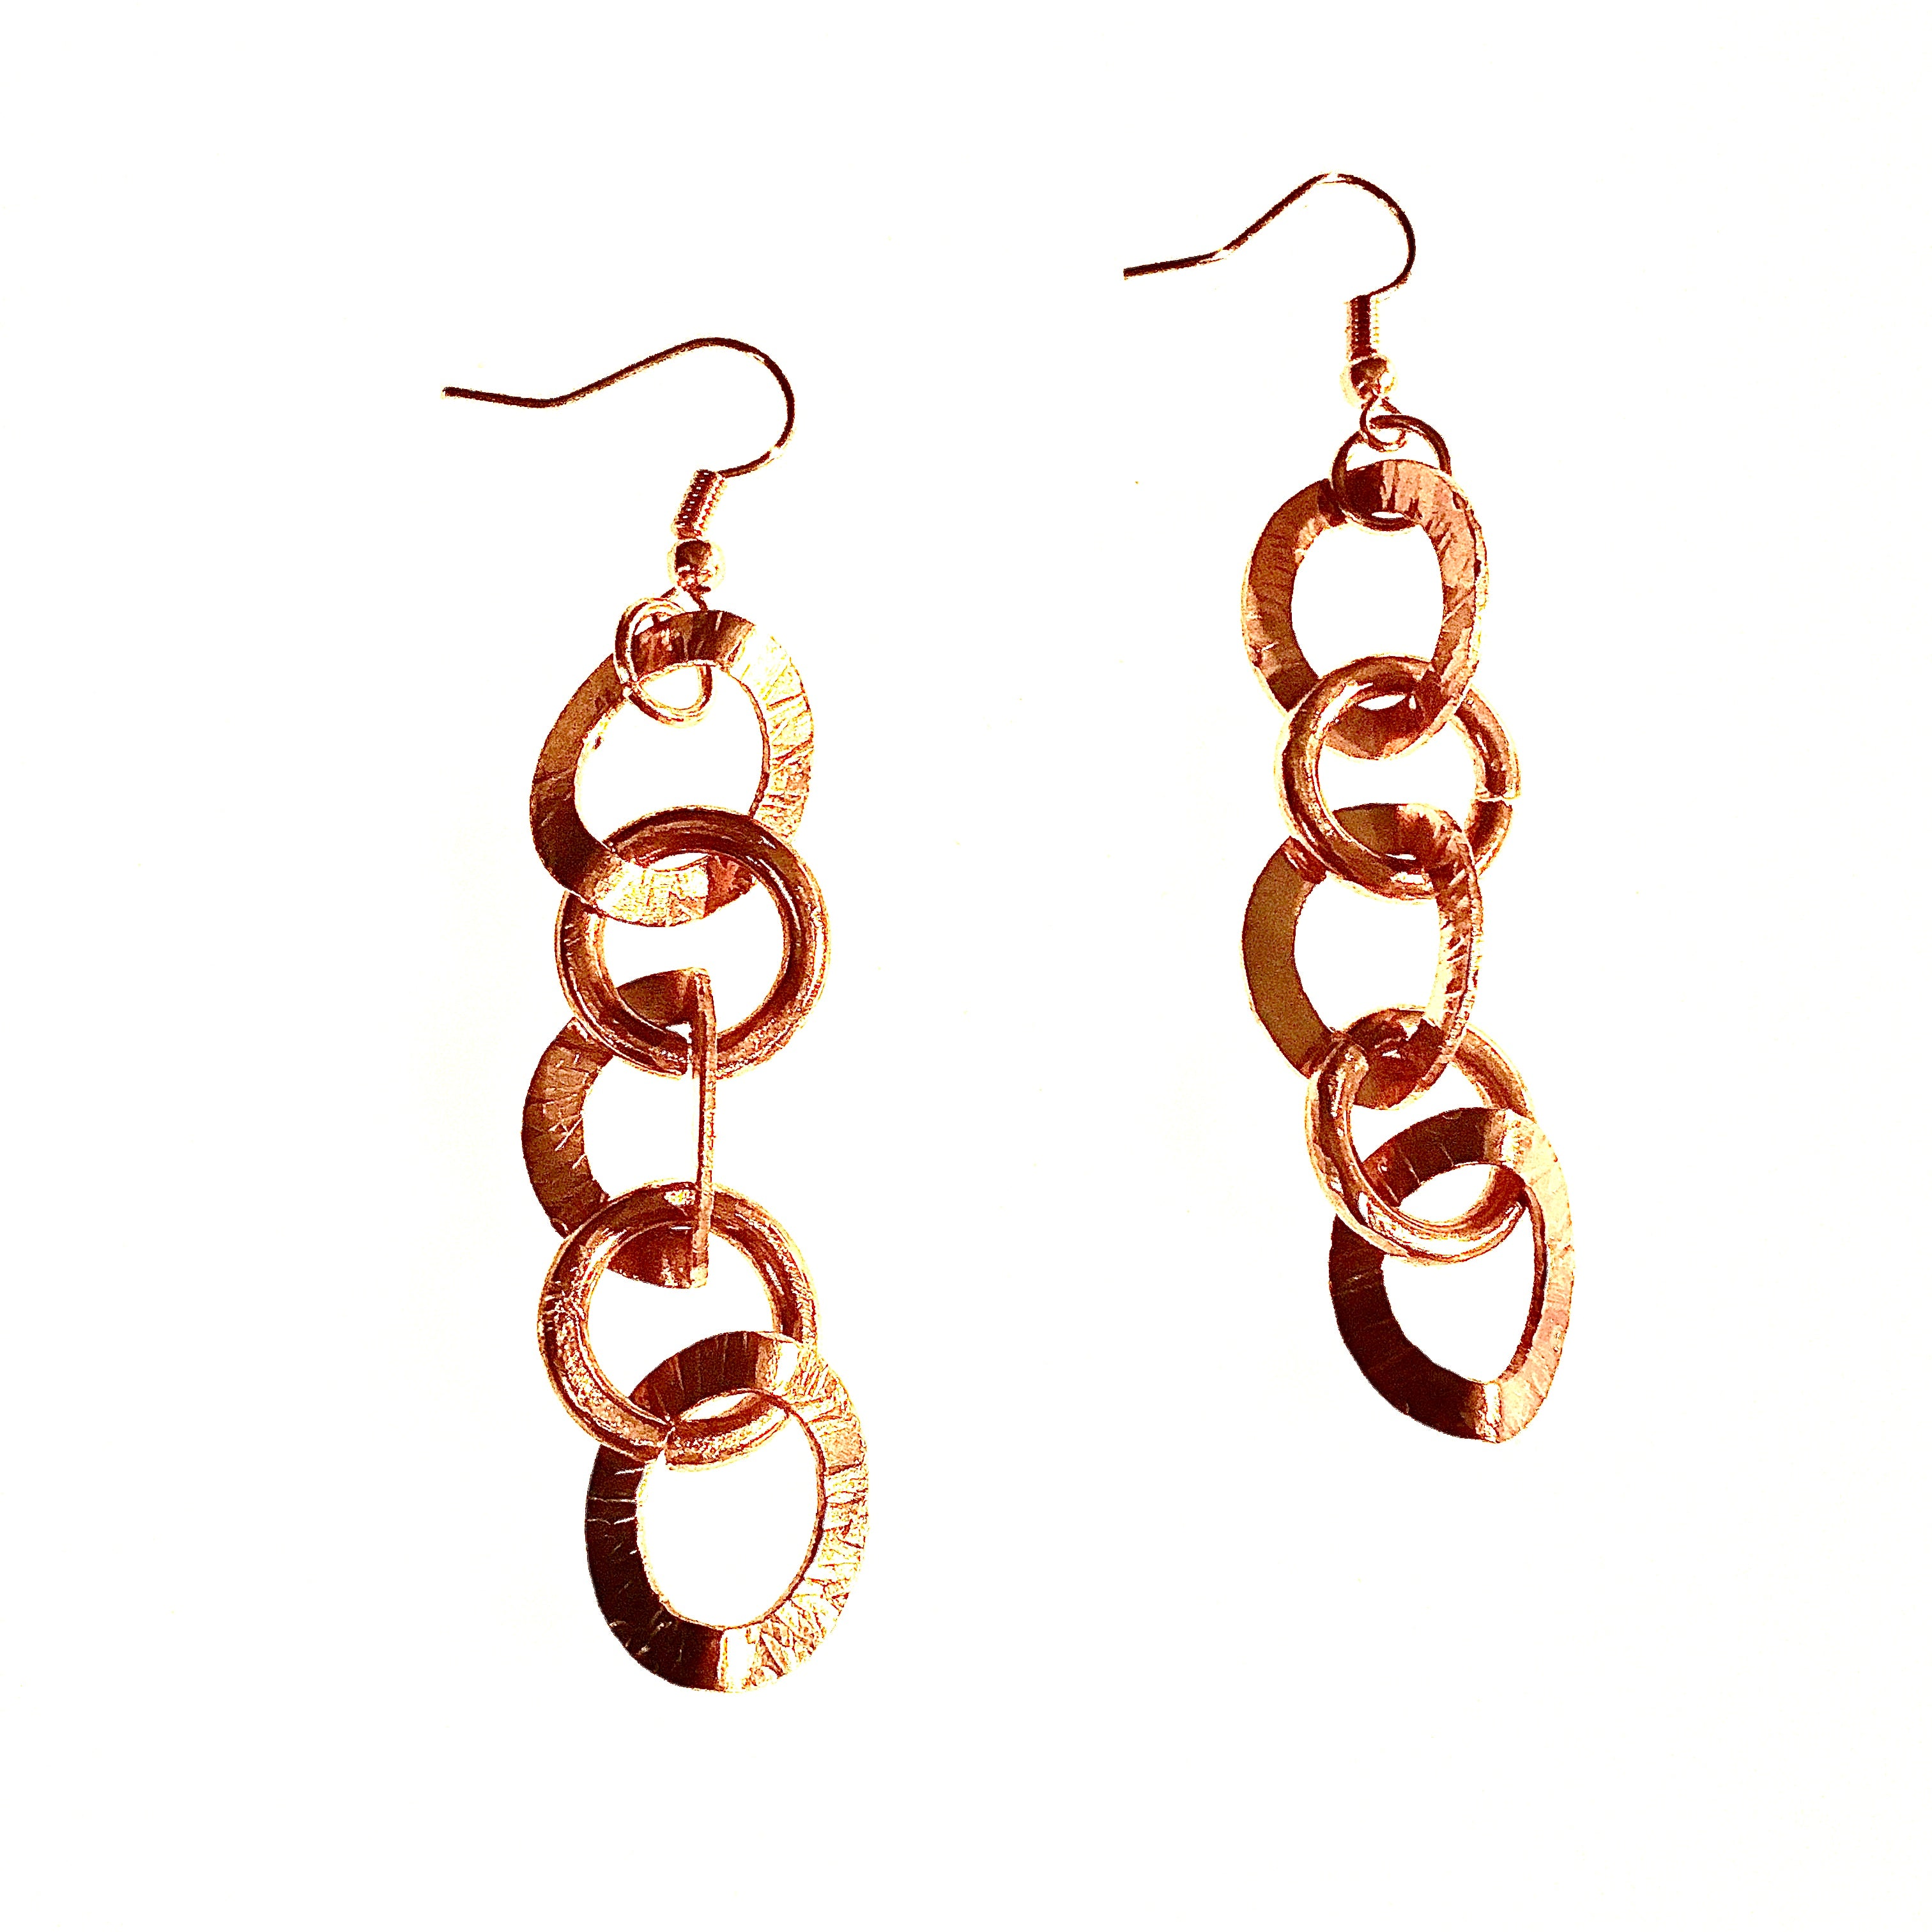 Copper moon earrings